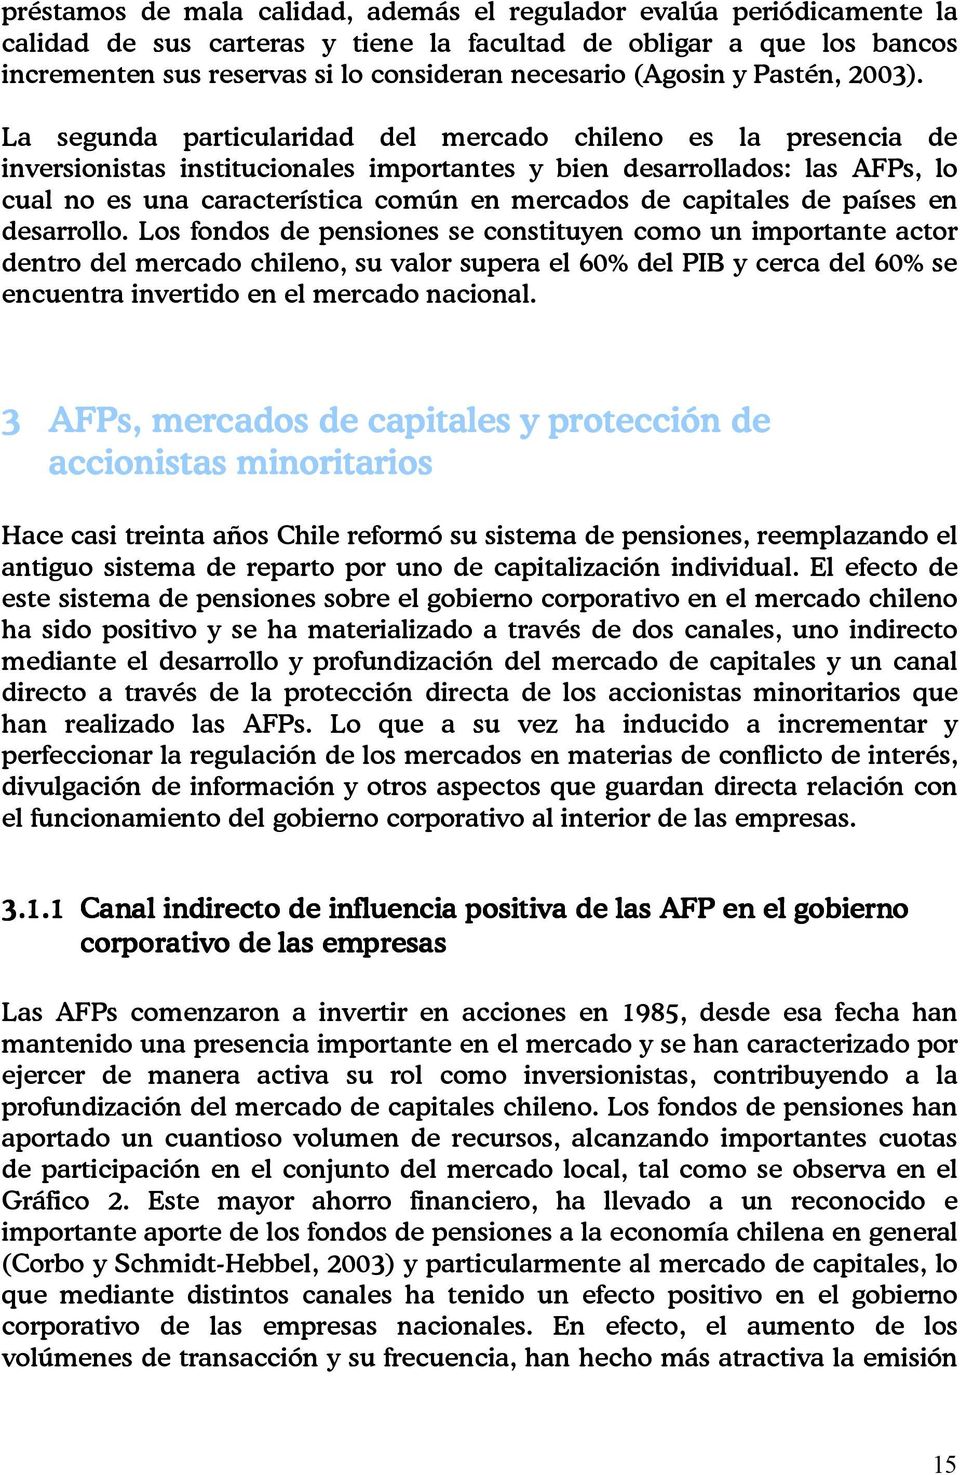 La segunda particularidad del mercado chileno es la presencia de inversionistas institucionales importantes y bien desarrollados: las AFPs, lo cual no es una característica común en mercados de